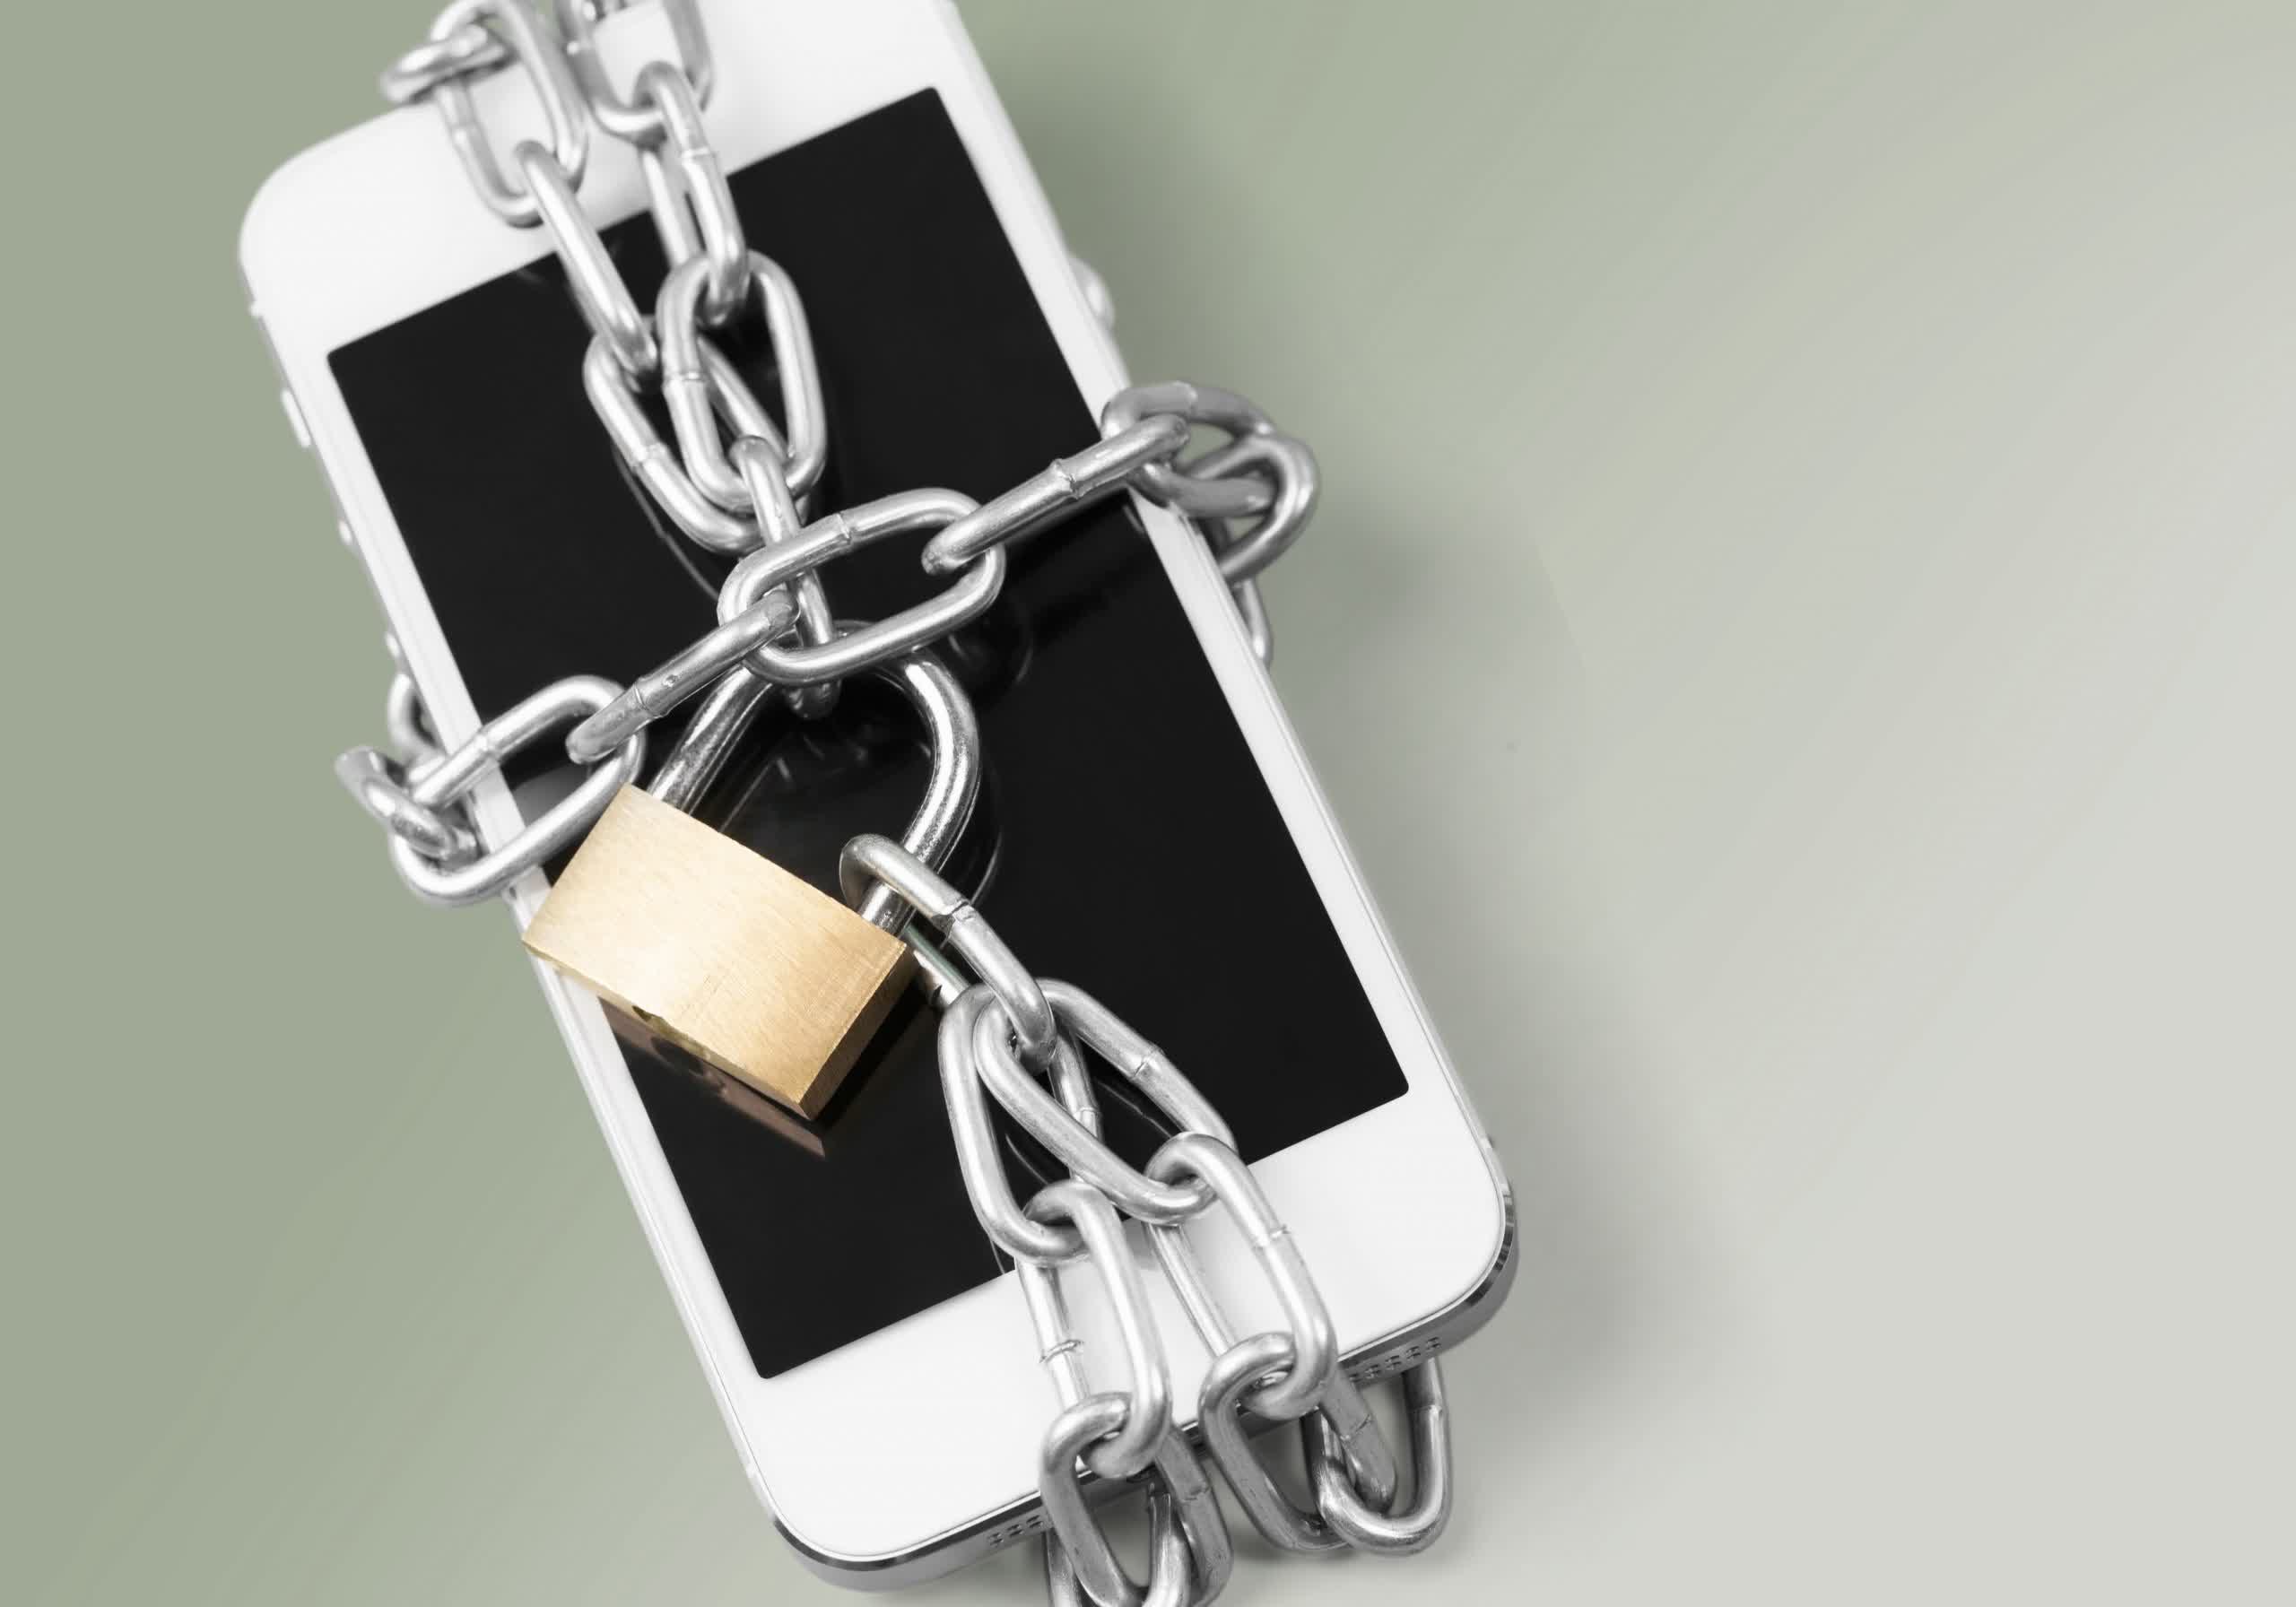 Los desarrolladores de iOS asustados buscan formas de subvertir la próxima actualización de privacidad